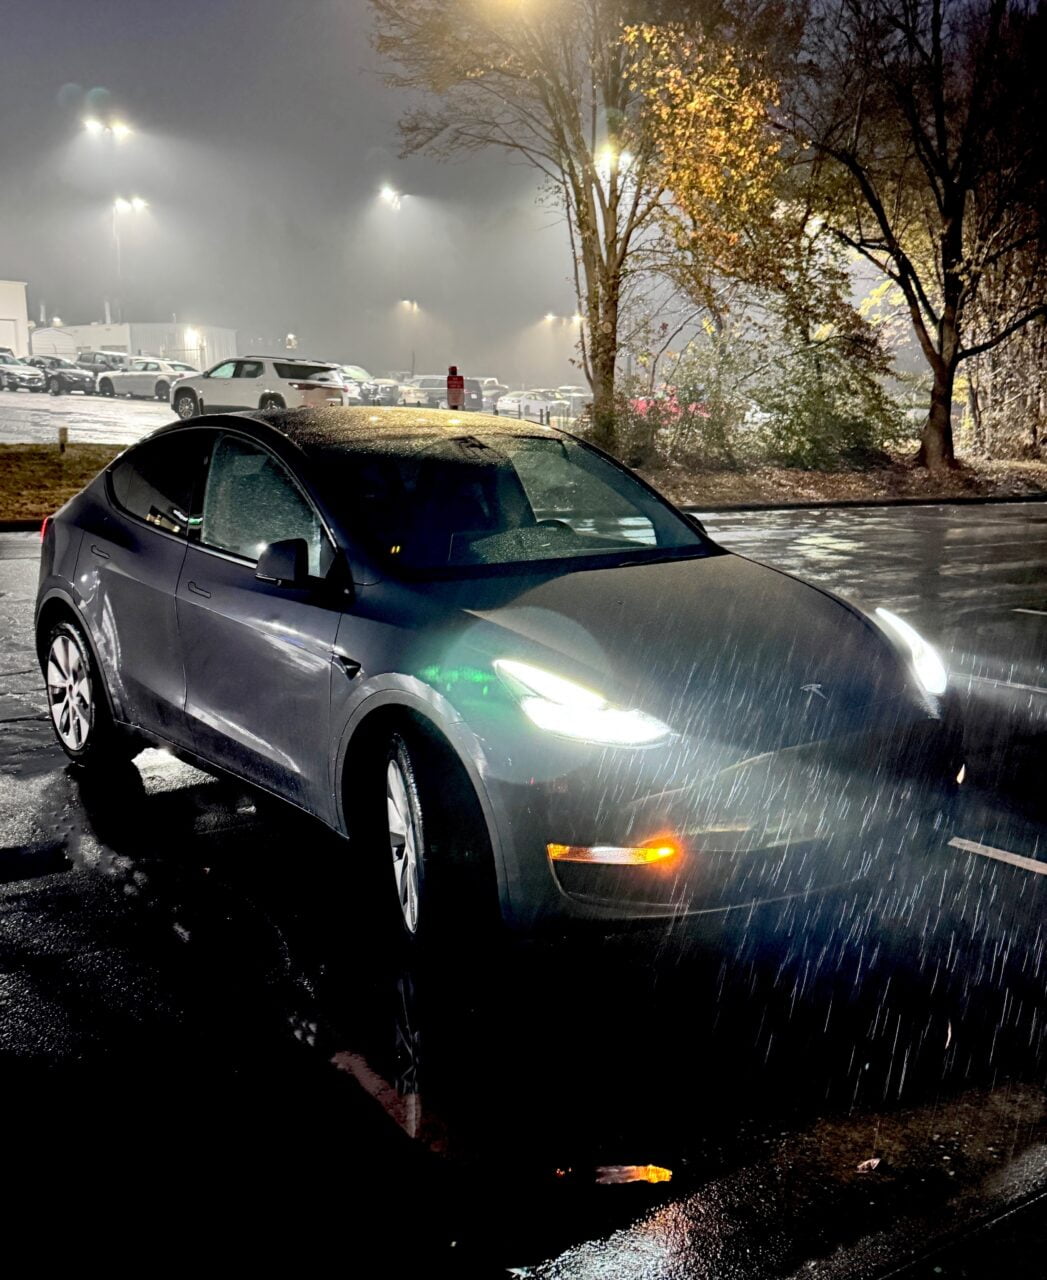 Czarny samochód marki Tesla zaparkowany na deszczowym parkingu w nocy, oświetlony przez latarnie.